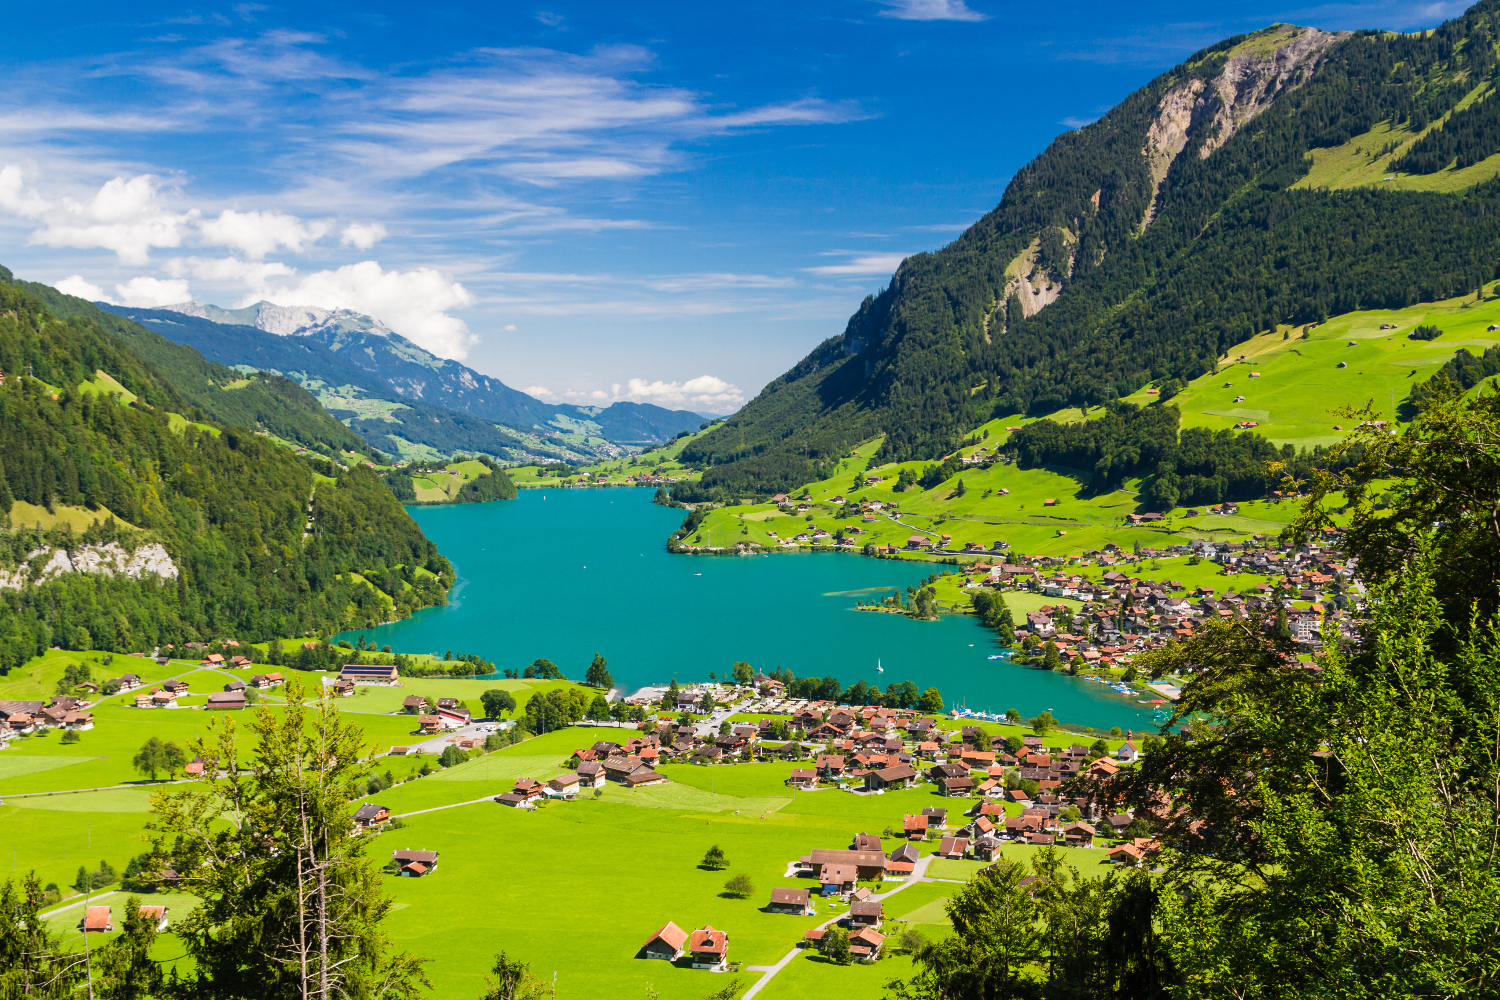 Switzerland_Interlaken_Lake Lungern Valley from Brunig Pass_shutterstock_253310941sml